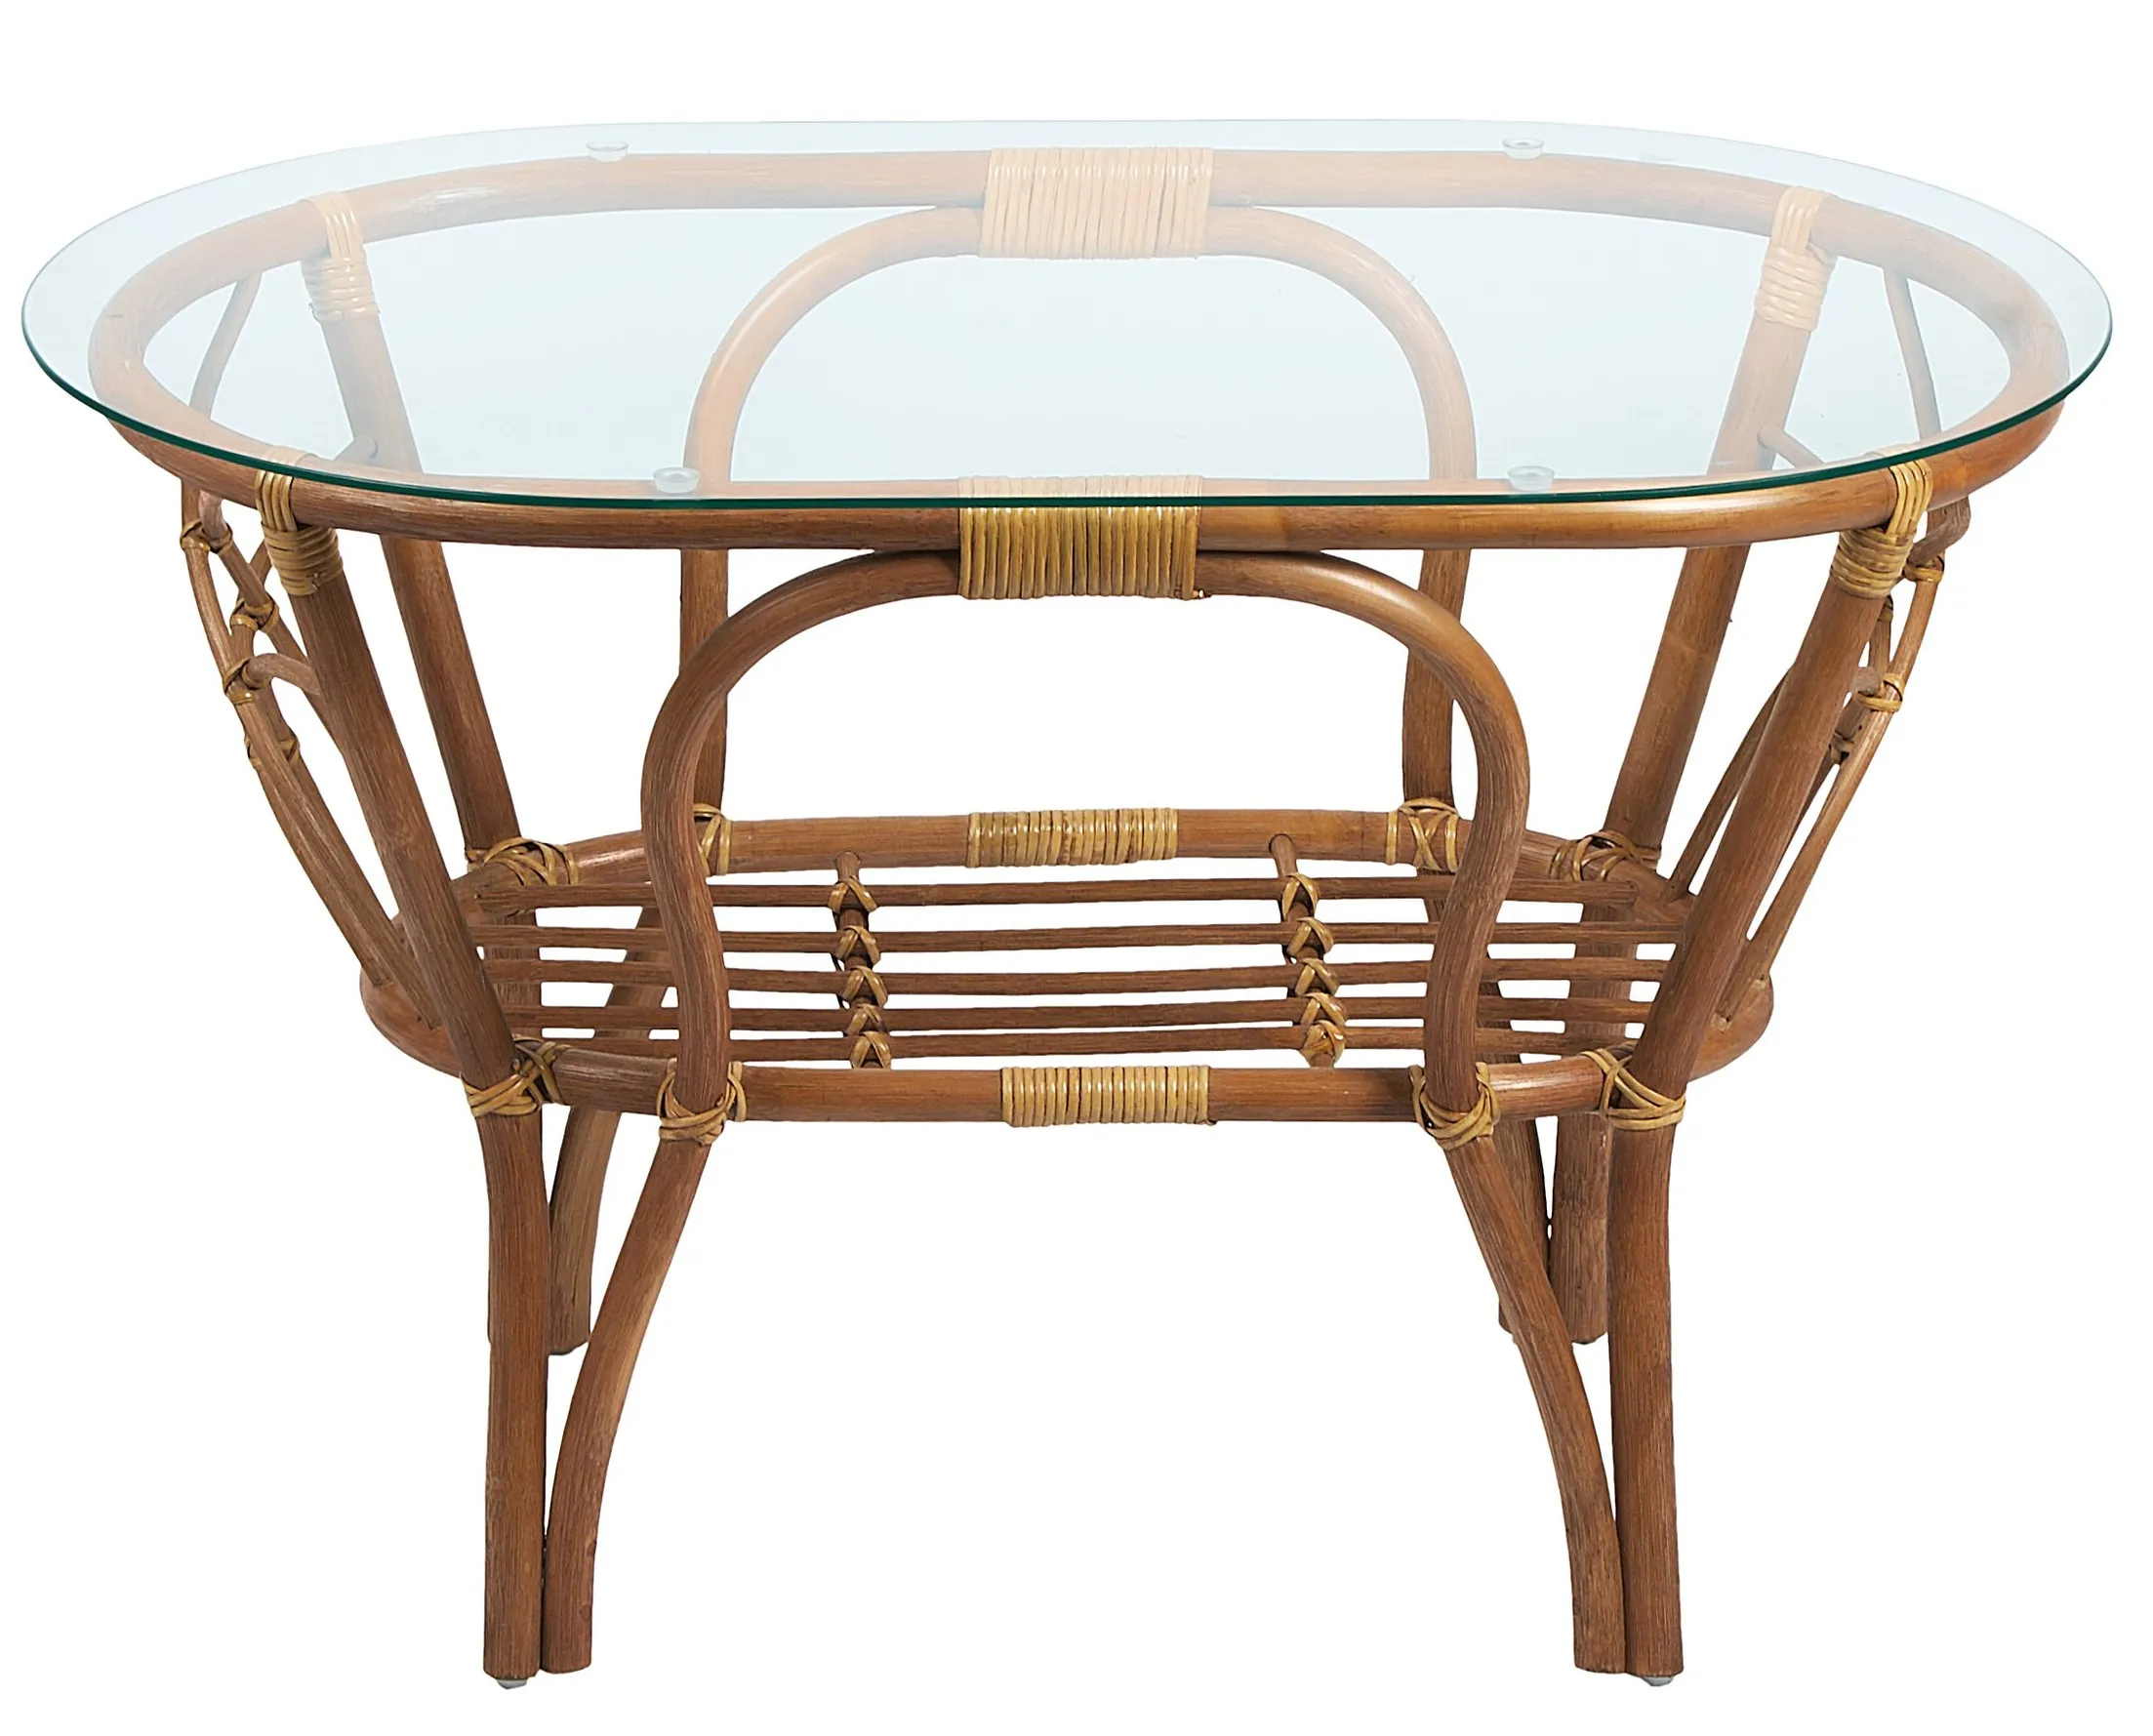 Комплект мебели из ротанга Багама дуэт с овальным столом миндаль (подушки шенилл полные светлые)